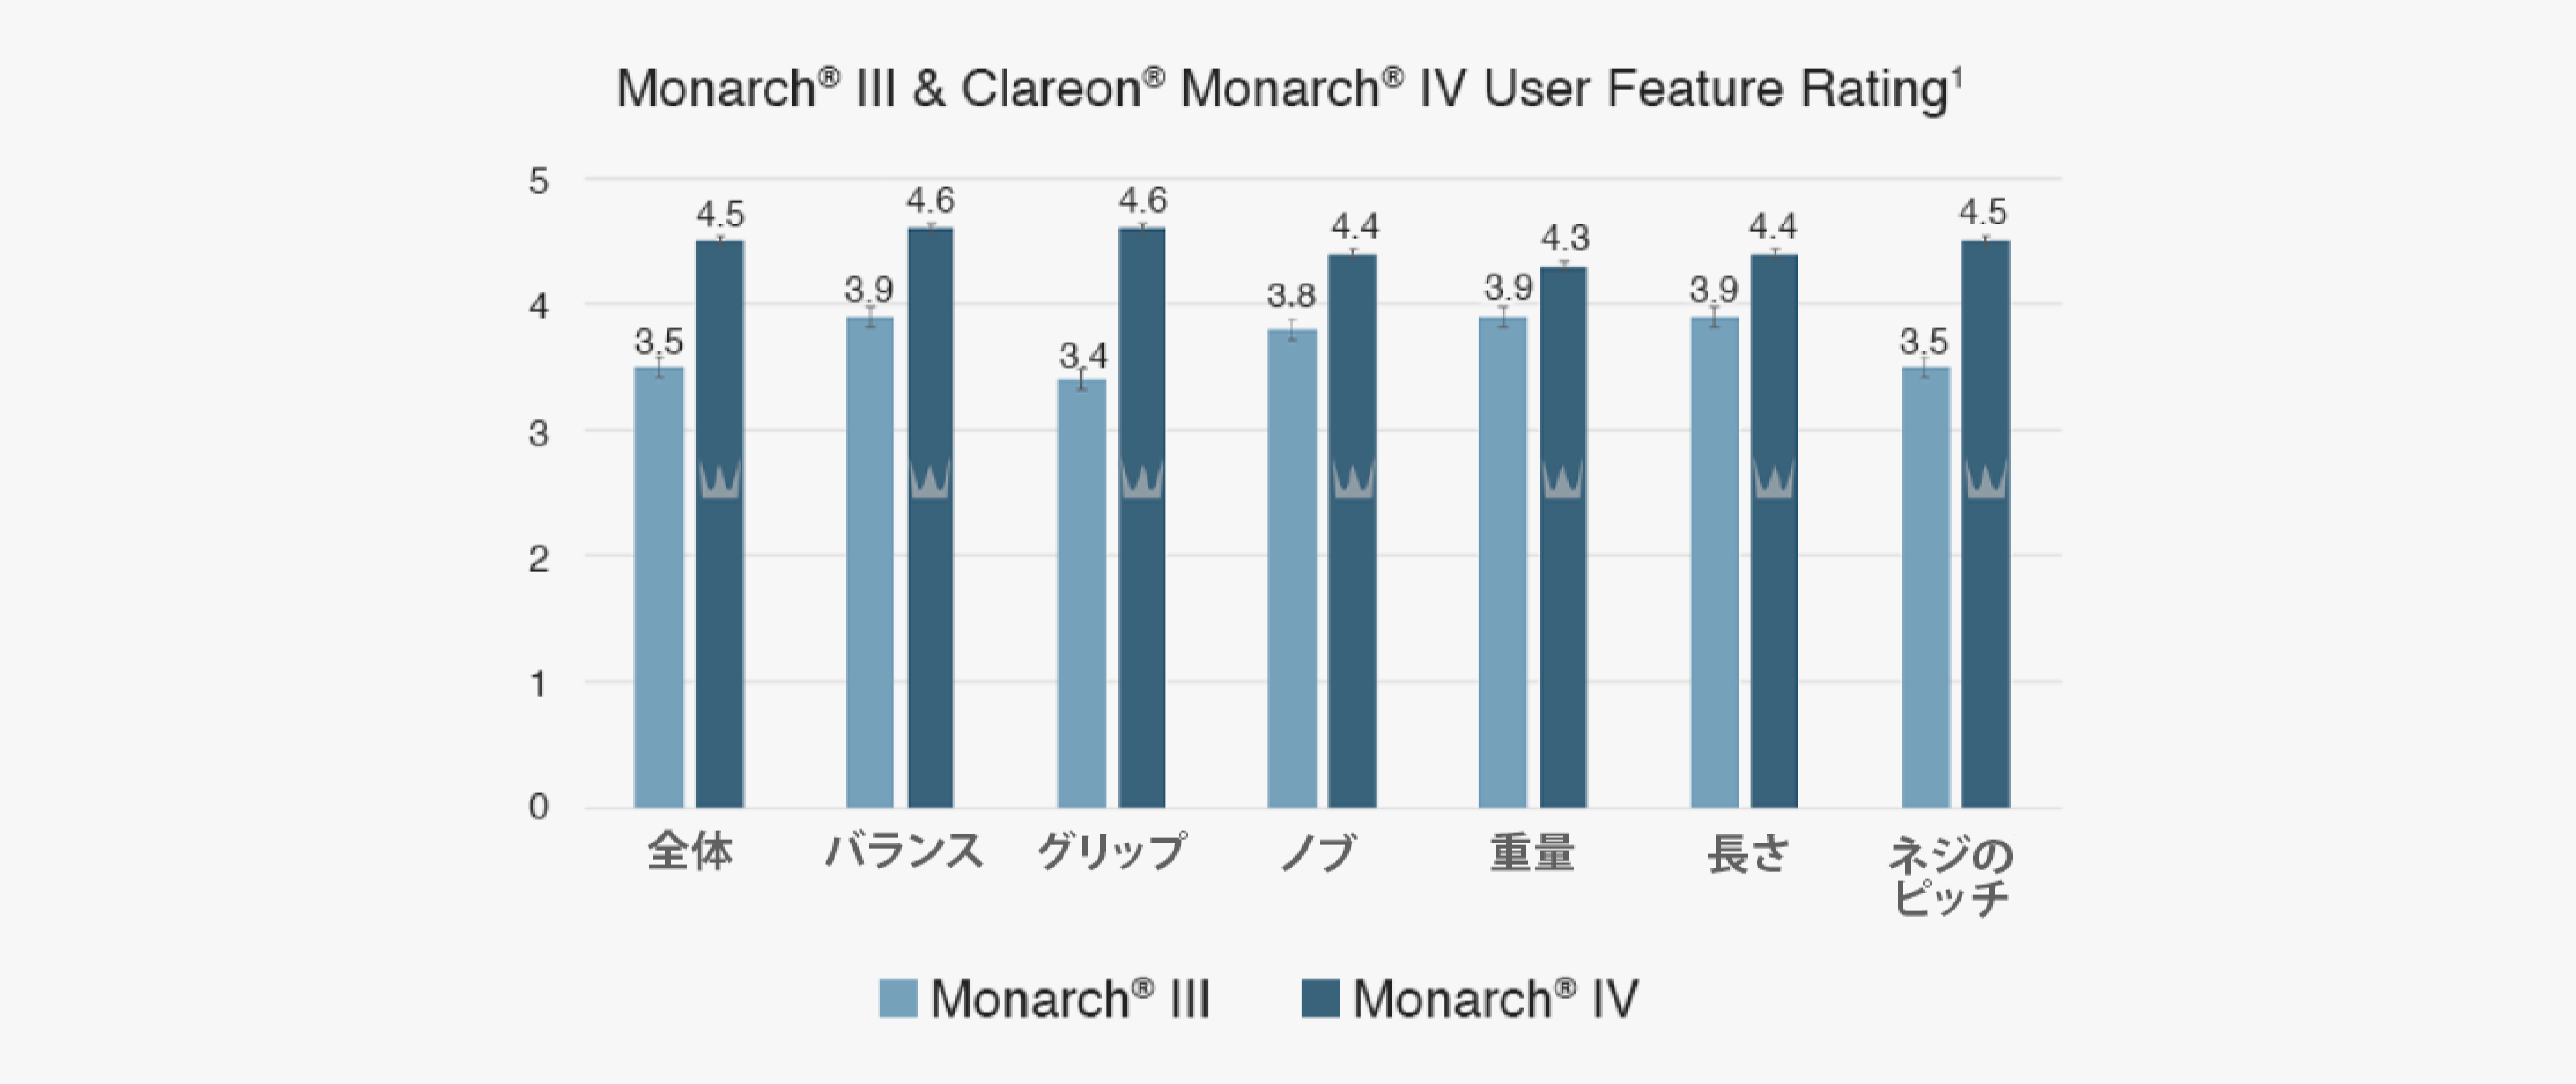 棒グラフはMonarch lVとMonarch lllの特徴の評価スコアを示しています。2つのデバイスの7つの特徴比較で、ネジのピッチ、長さ、重量、ノブ、グリップ、バランス、全体があります。Monarch lVはこれら7つの項目全てでMonarch lllより高いスコアでした。 全体のスコアはMonarch lllが3.5であるのに対して、Monarch lVは4.5でした。